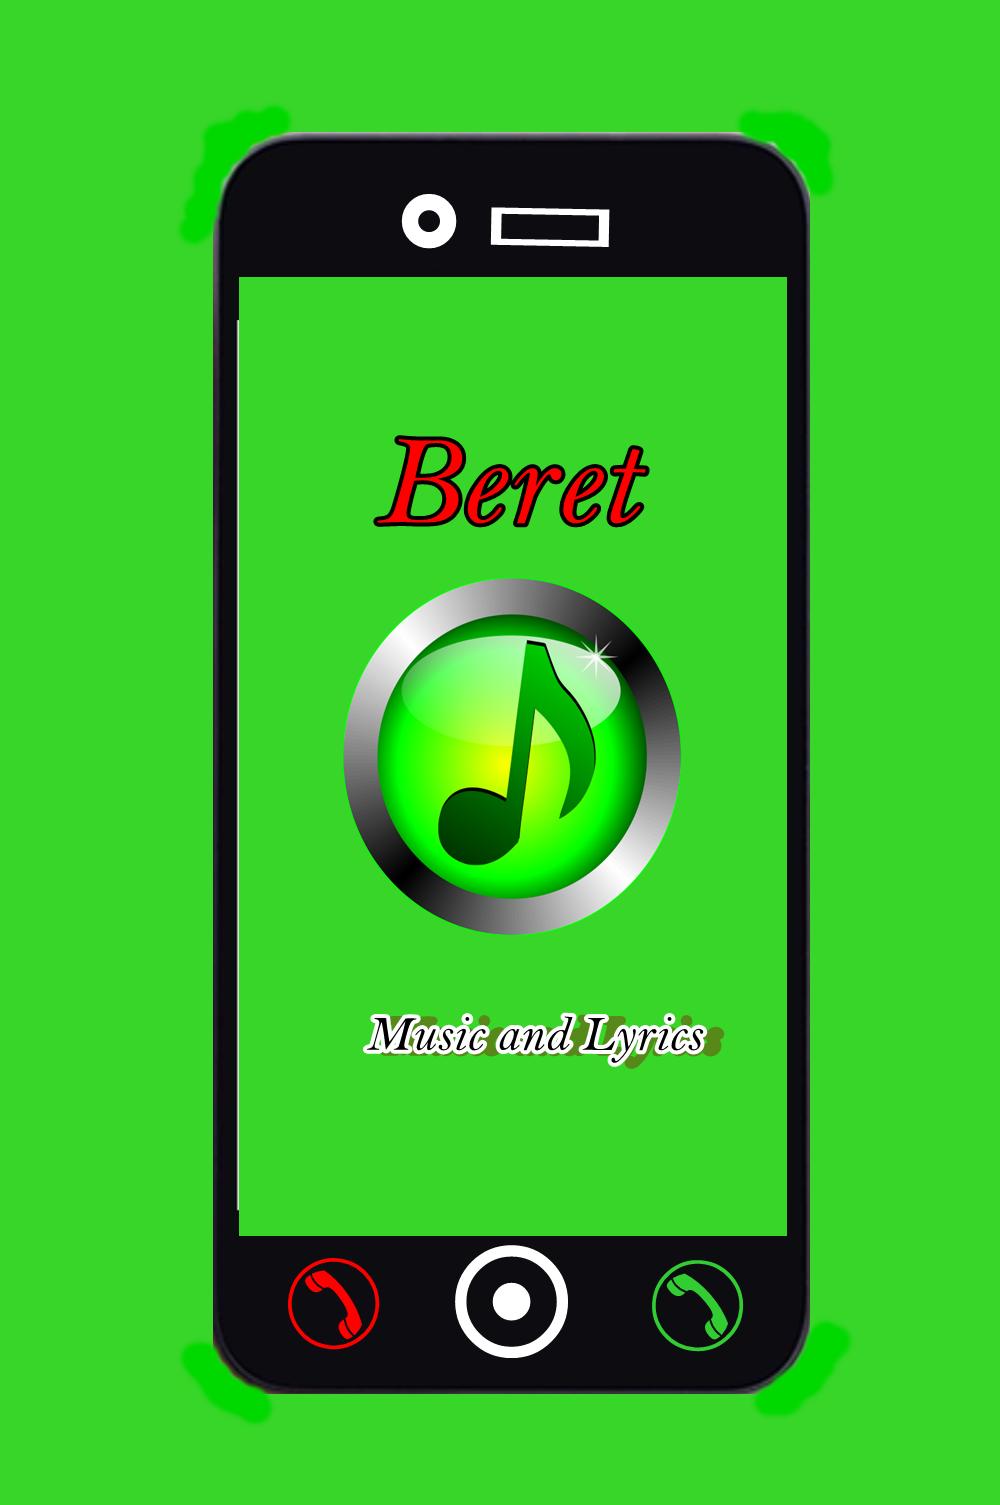 Beret-Ojala | Canciones De Letra for Android - APK Download